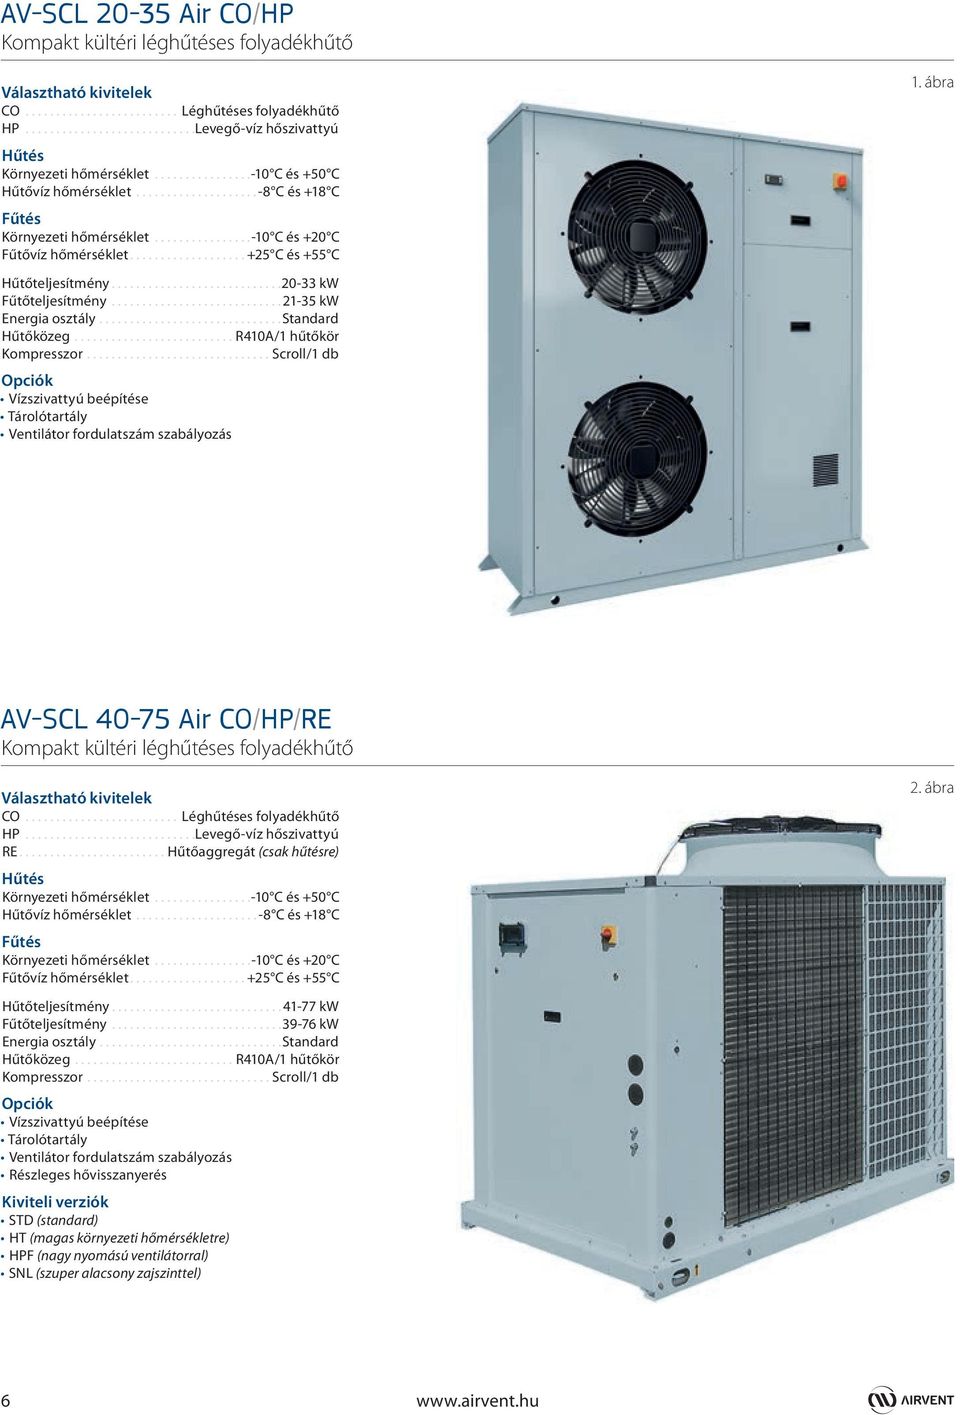 ..21-35 kw Energia osztály...standard Hűtőközeg...R410A/1 hűtőkör Kompresszor...Scroll/1 db Vízszivattyú beépítése Tárolótartály Ventilátor fordulatszám szabályozás 1.